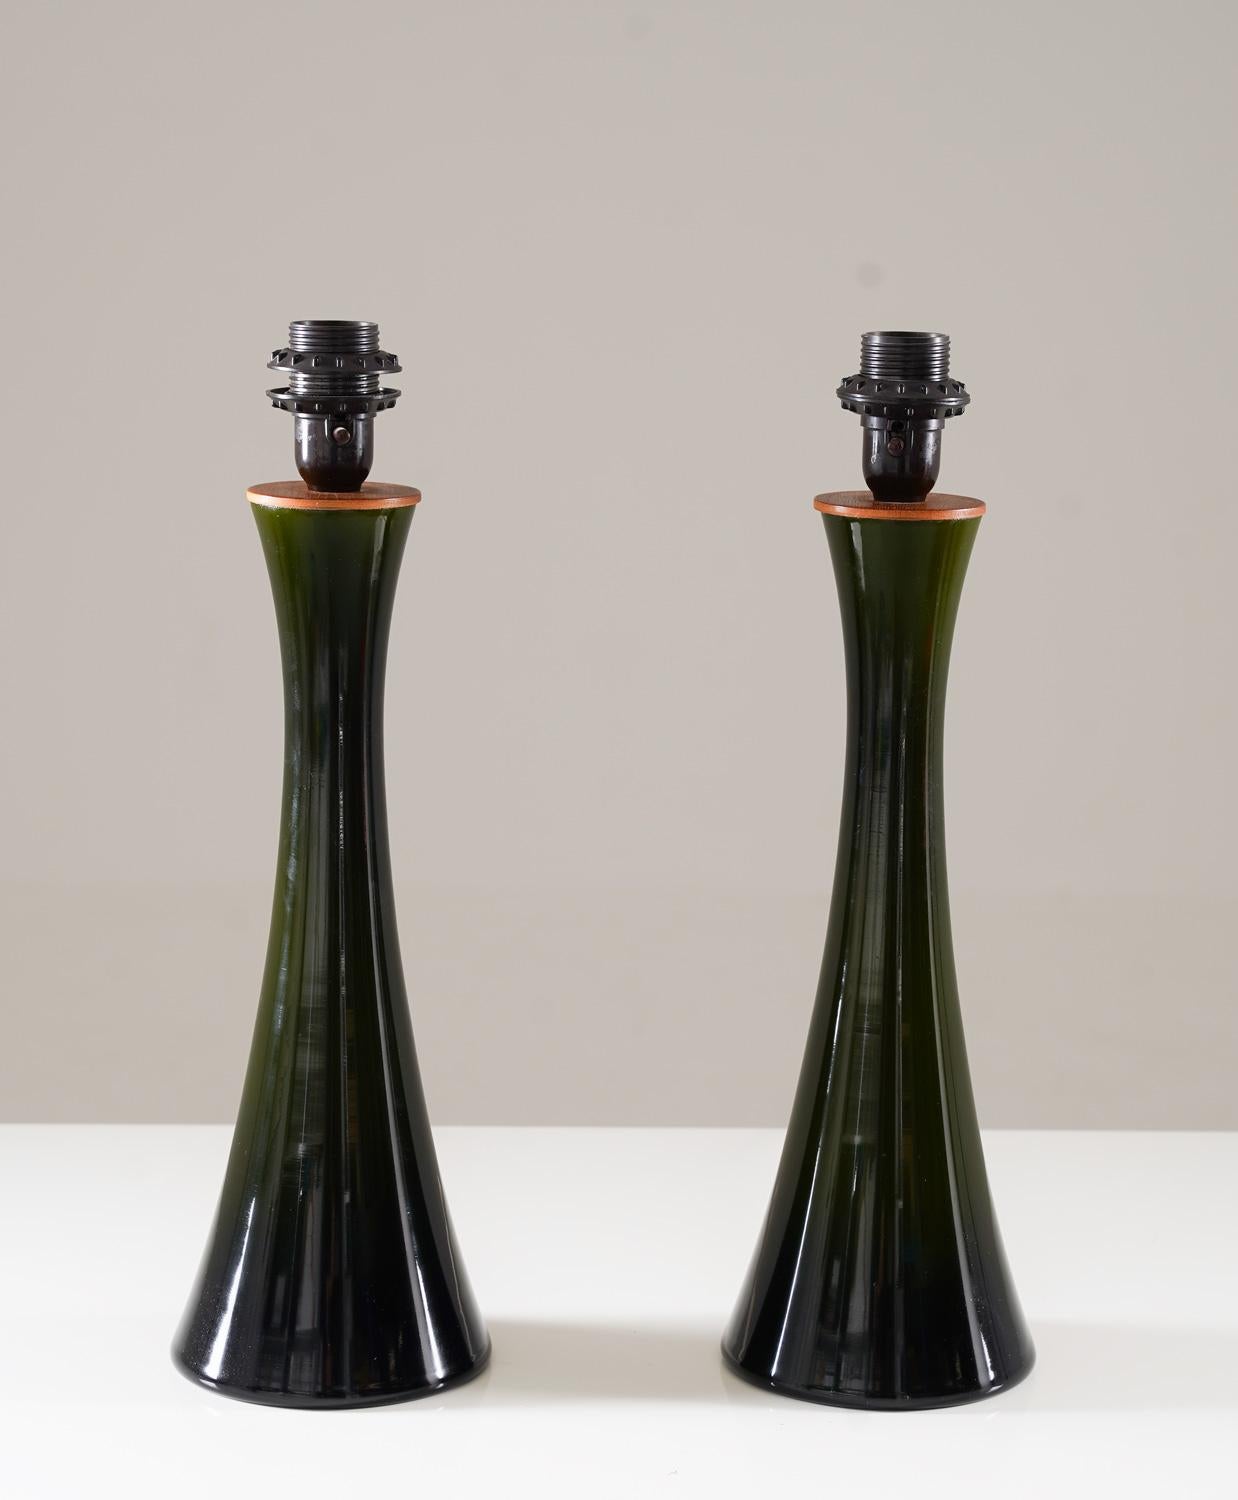 Paar Tischlampen, hergestellt von Bergboms, Schweden, 1960er Jahre.
Die Lampen bestehen aus dunkelgrünem sanduhrförmigem Glas mit einer Teakholzplatte, die das Leuchtmittel aufnimmt.
Die (neuen) Lampenschirme können auf Wunsch mitgeliefert